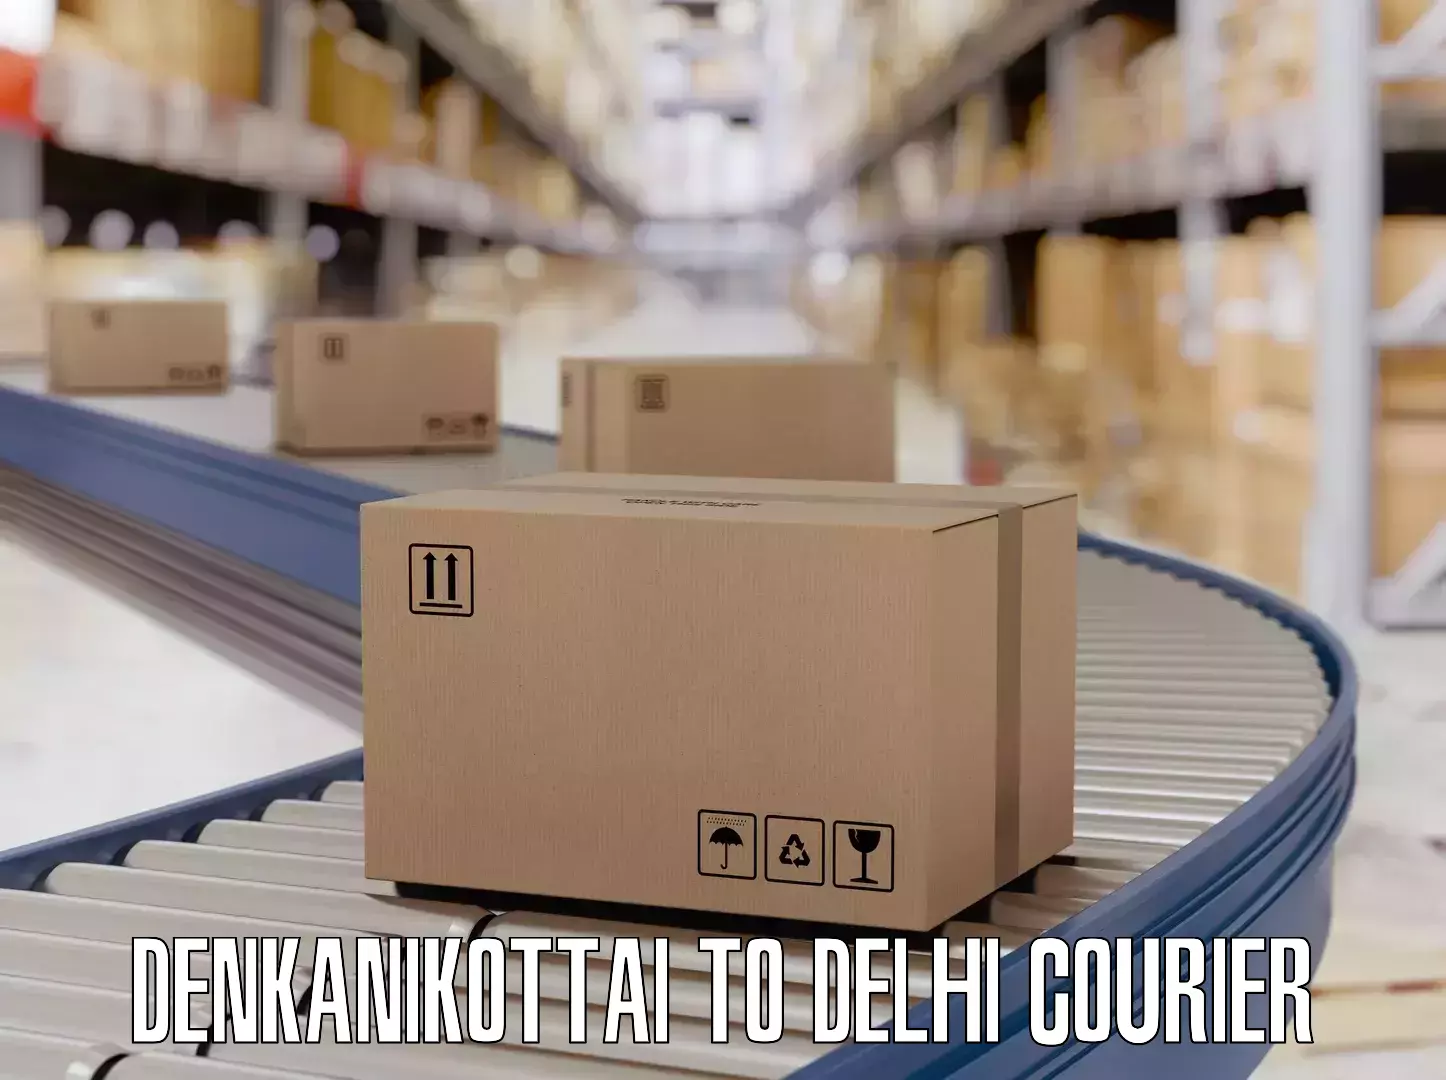 Luggage delivery system Denkanikottai to Sarojini Nagar